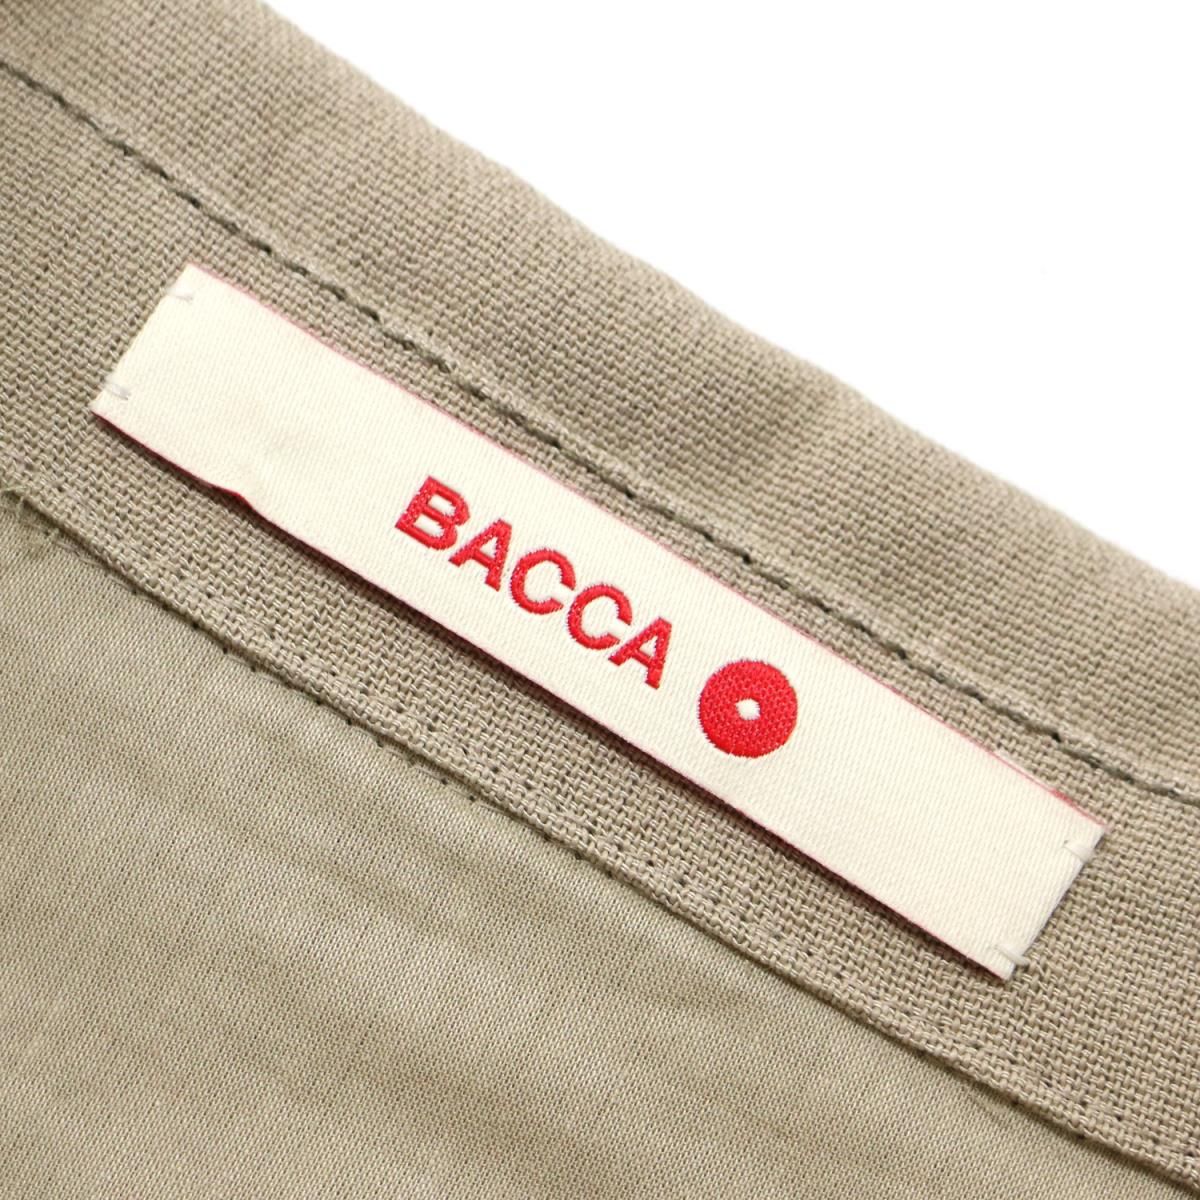 BACCA ハイツイストレーヨン シャツジャケット 36サイズ